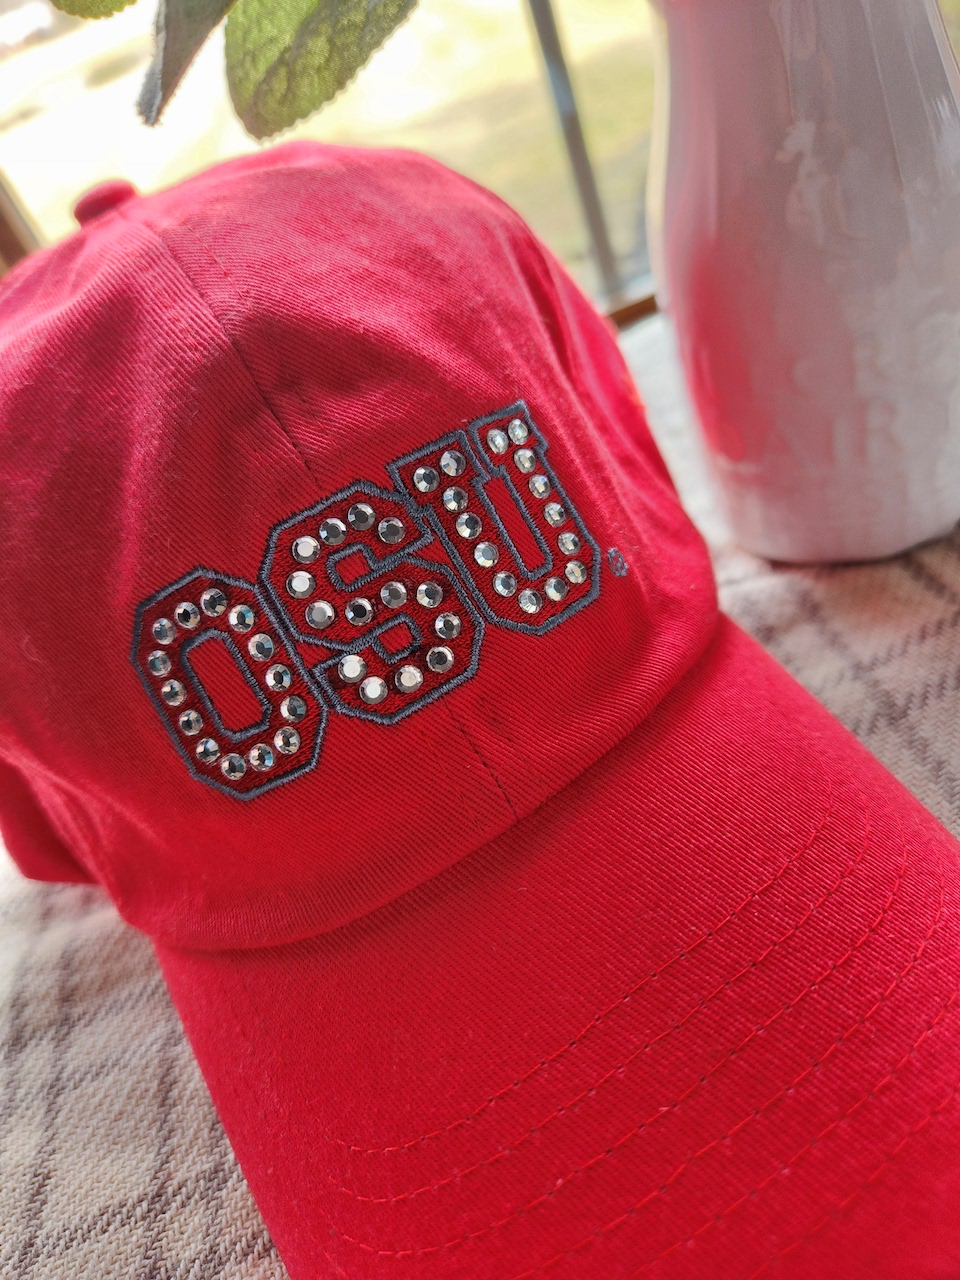 OSU bling "GO BUCKS" hat